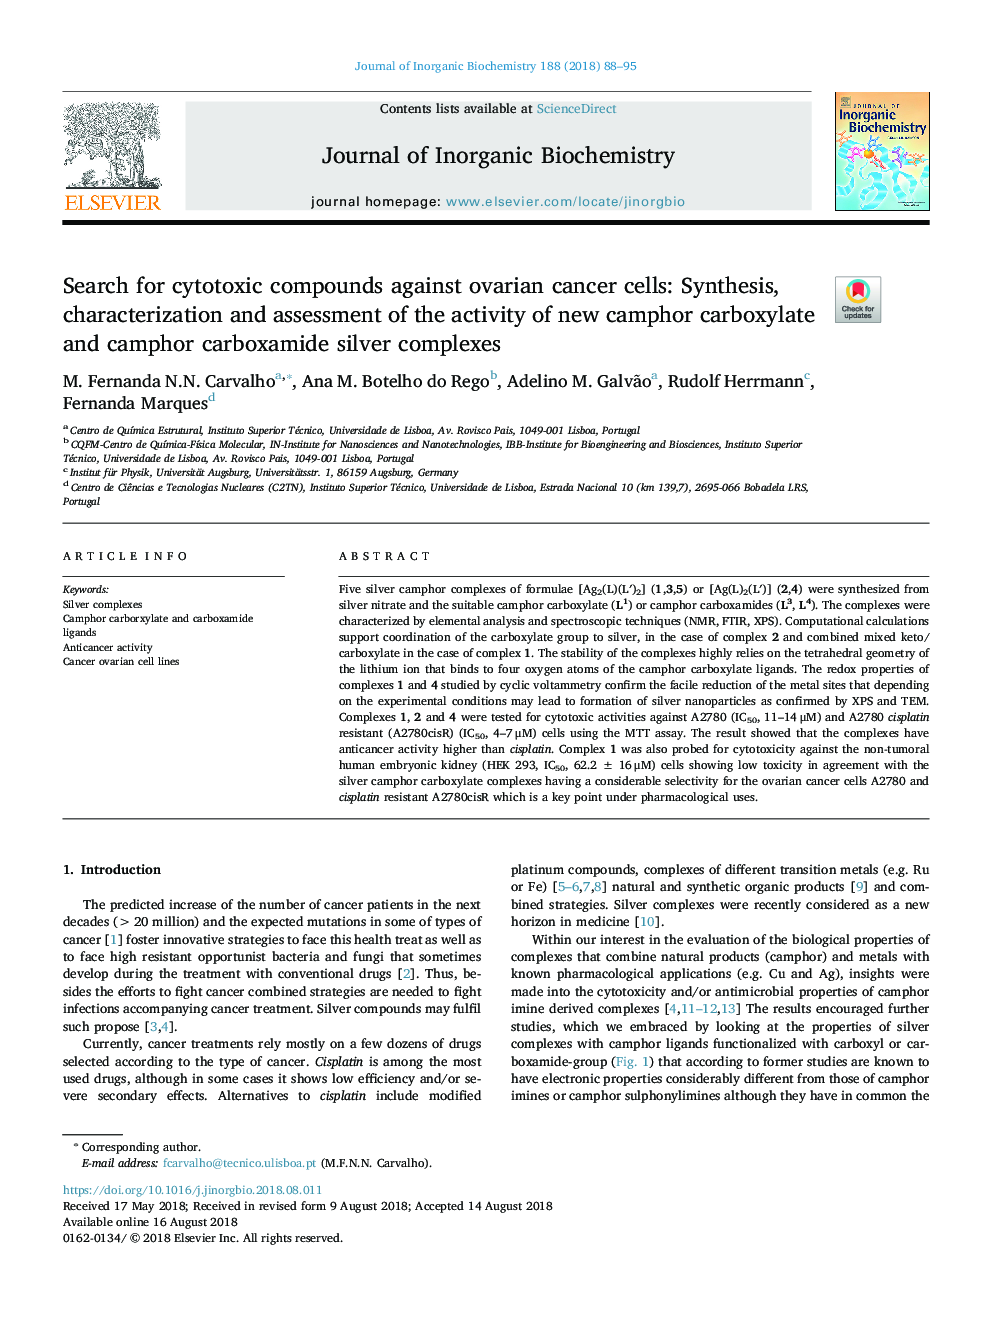 جستجو برای ترکیبات سیتوتوکسیک در برابر سلول های سرطانی تخمدان: سنتز، مشخص کردن و ارزیابی فعالیت های جدید کامپور کربوکسیلات کامپور و کاربوکامید نقره 